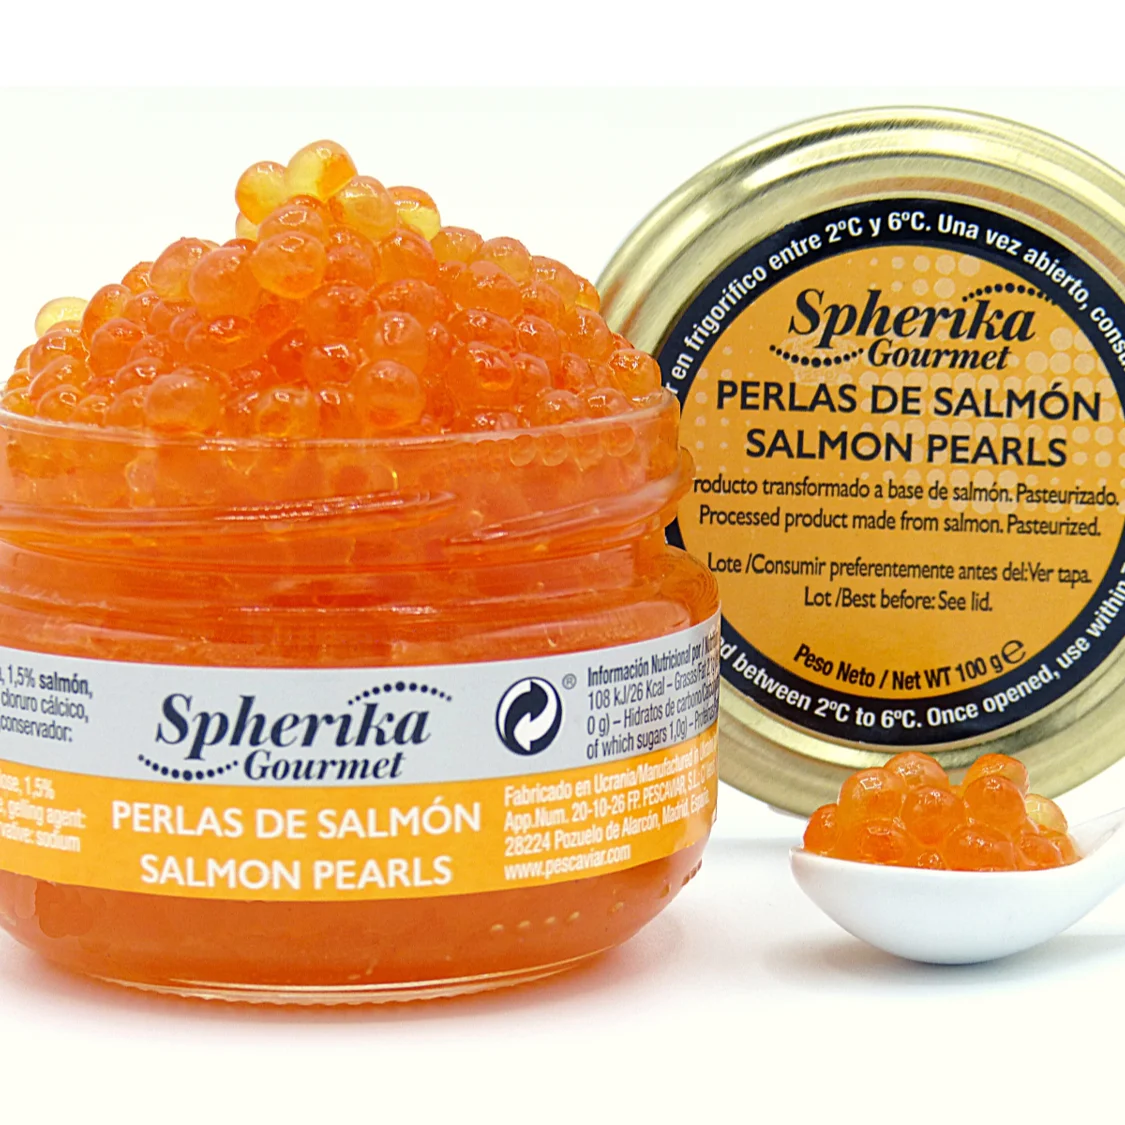 Salmon Pearls   Spherika Gourmet 100g (1700006063595)